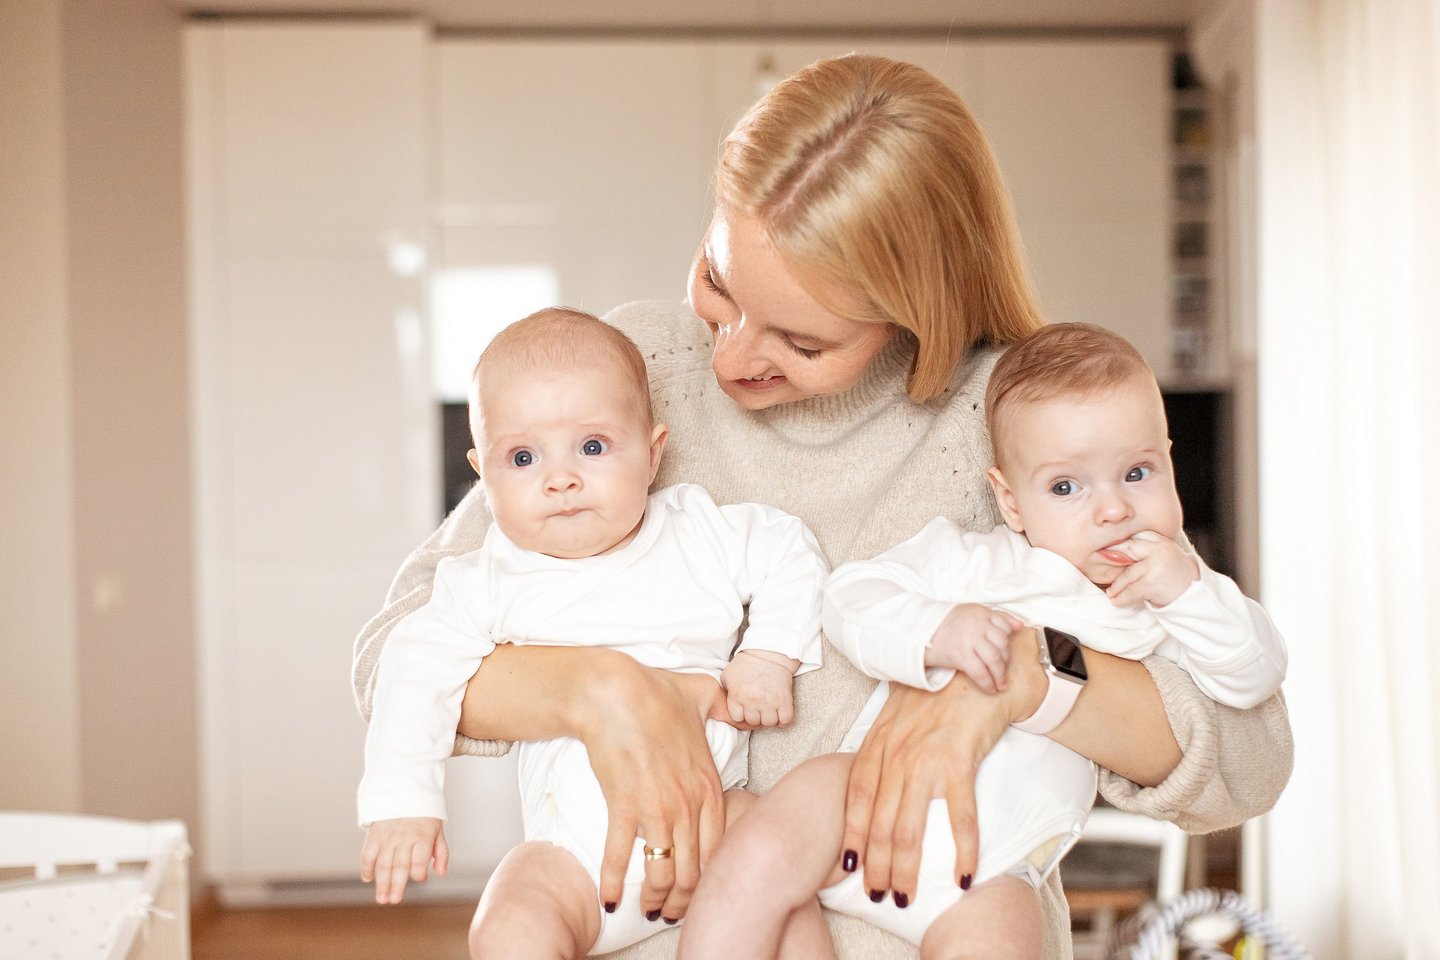 Kūdikio kraitelis priklauso kiekvienai šeimai per tris mėnesius nuo gimimo užregistravusiai savo atžalas Kauno mieste.<br> Pranešimo spaudai nuotr.